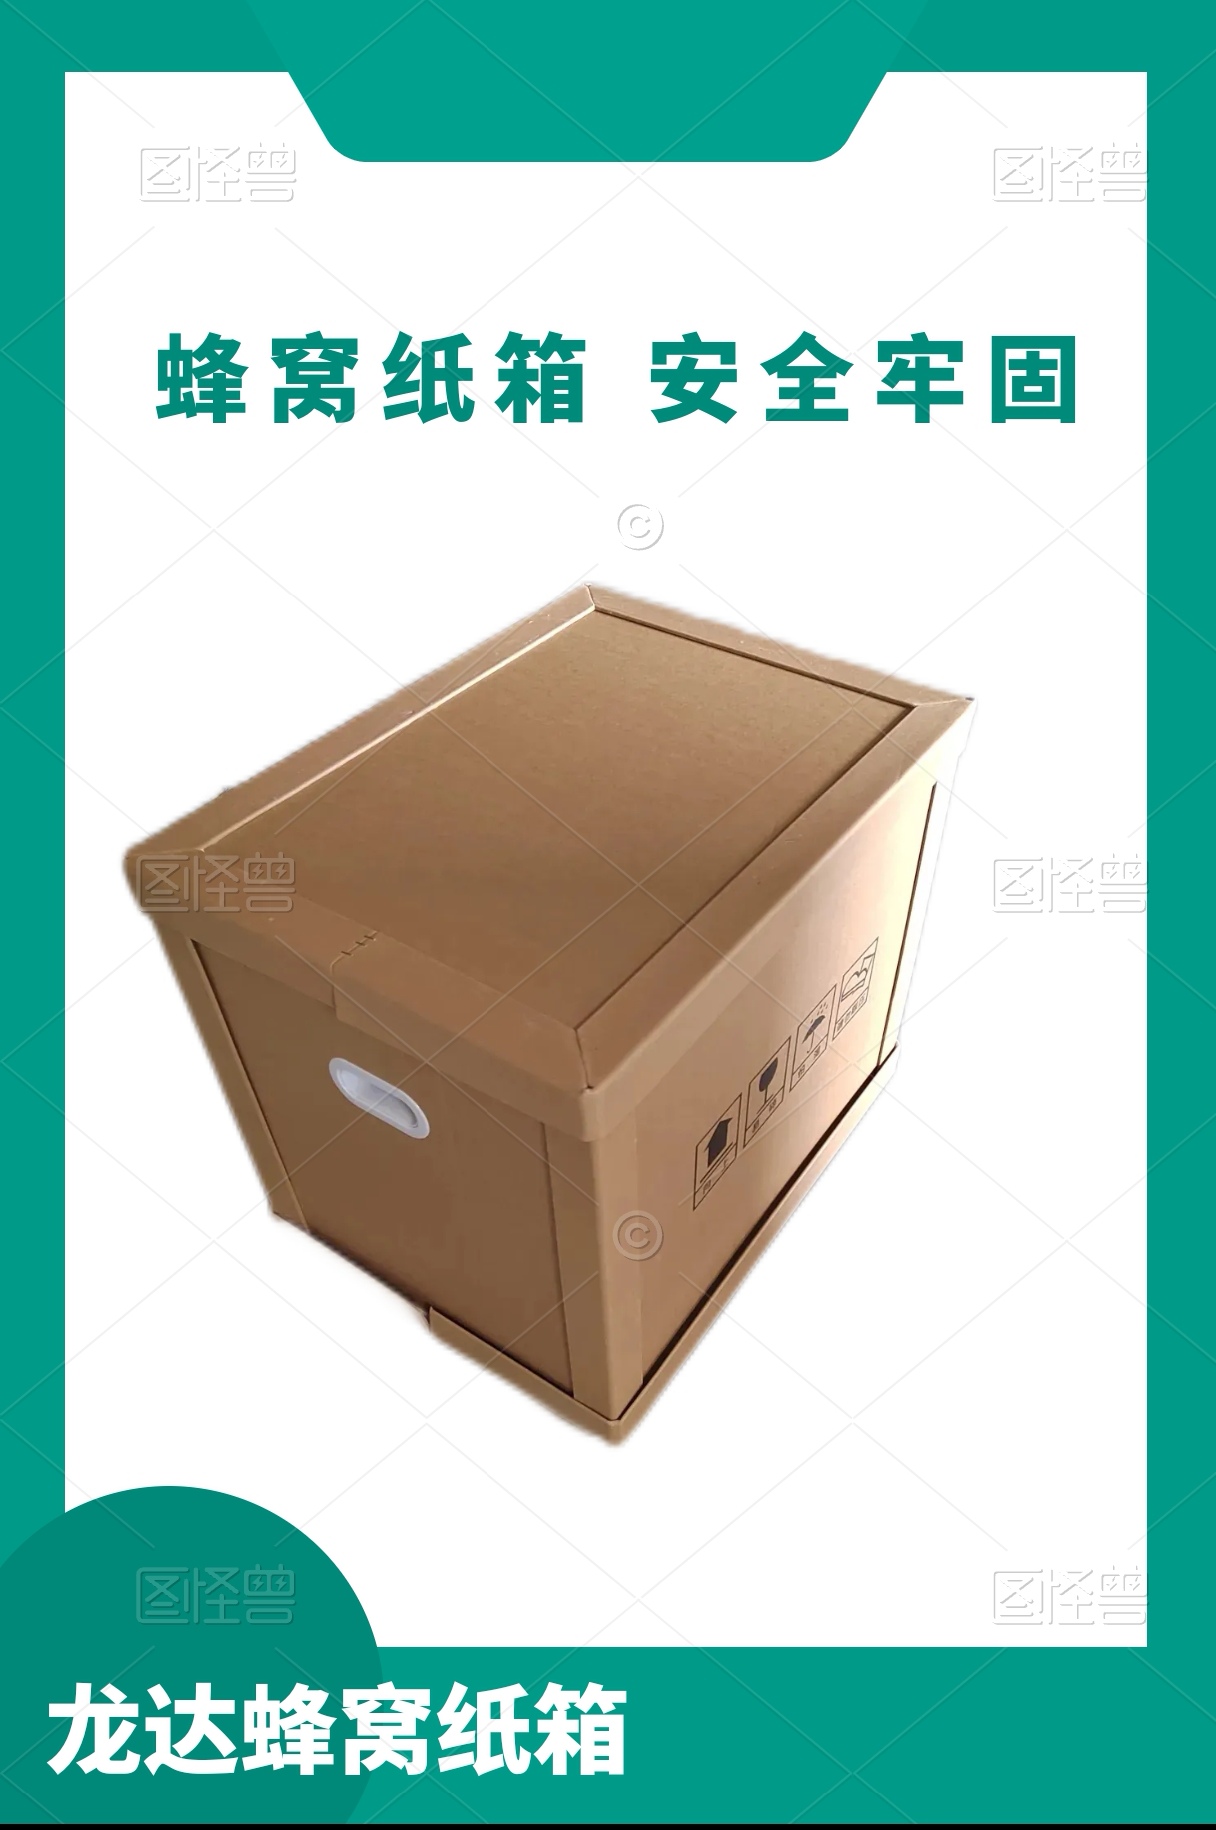 龙达空运包装箱 机械设备包装箱 物流快递 定制各种规格